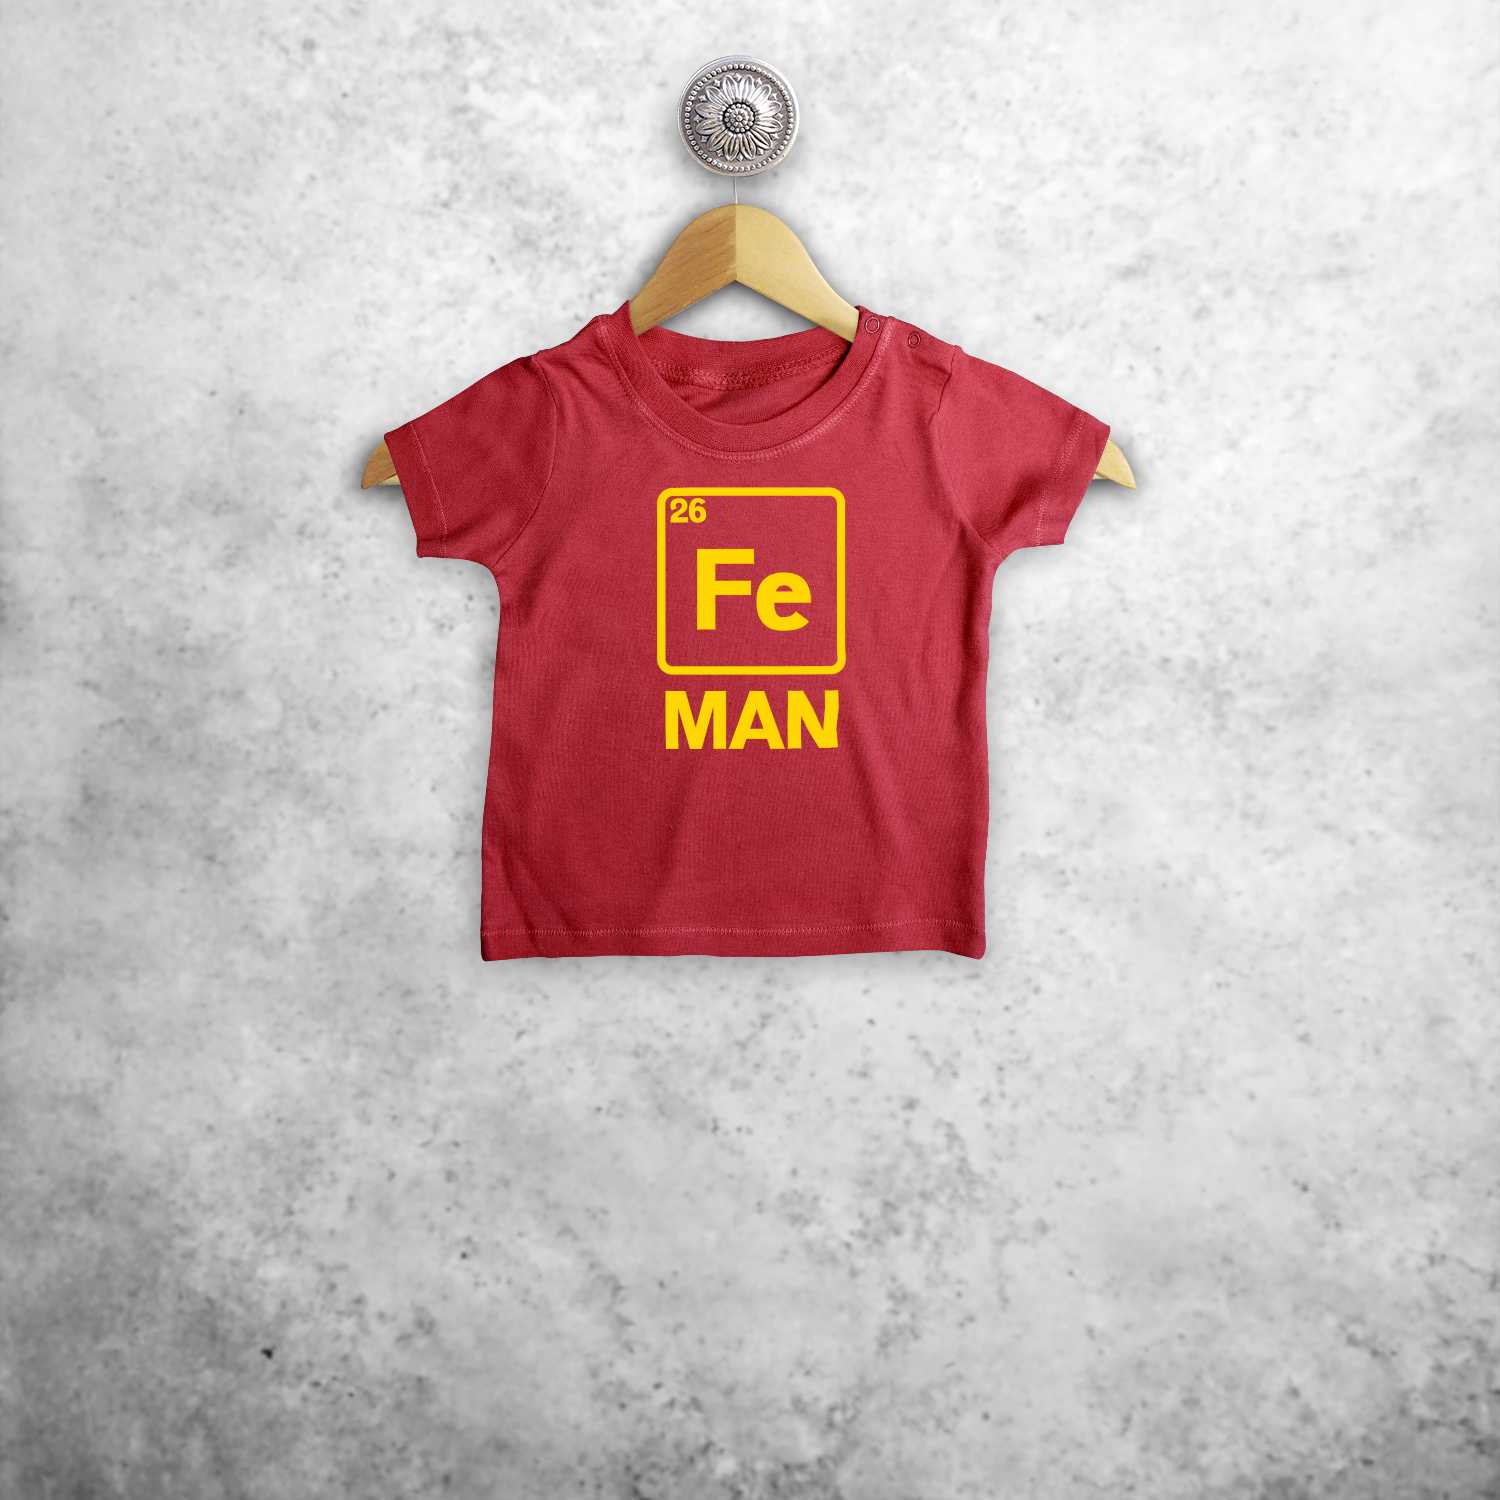 'Fe man' baby shortsleeve shirt